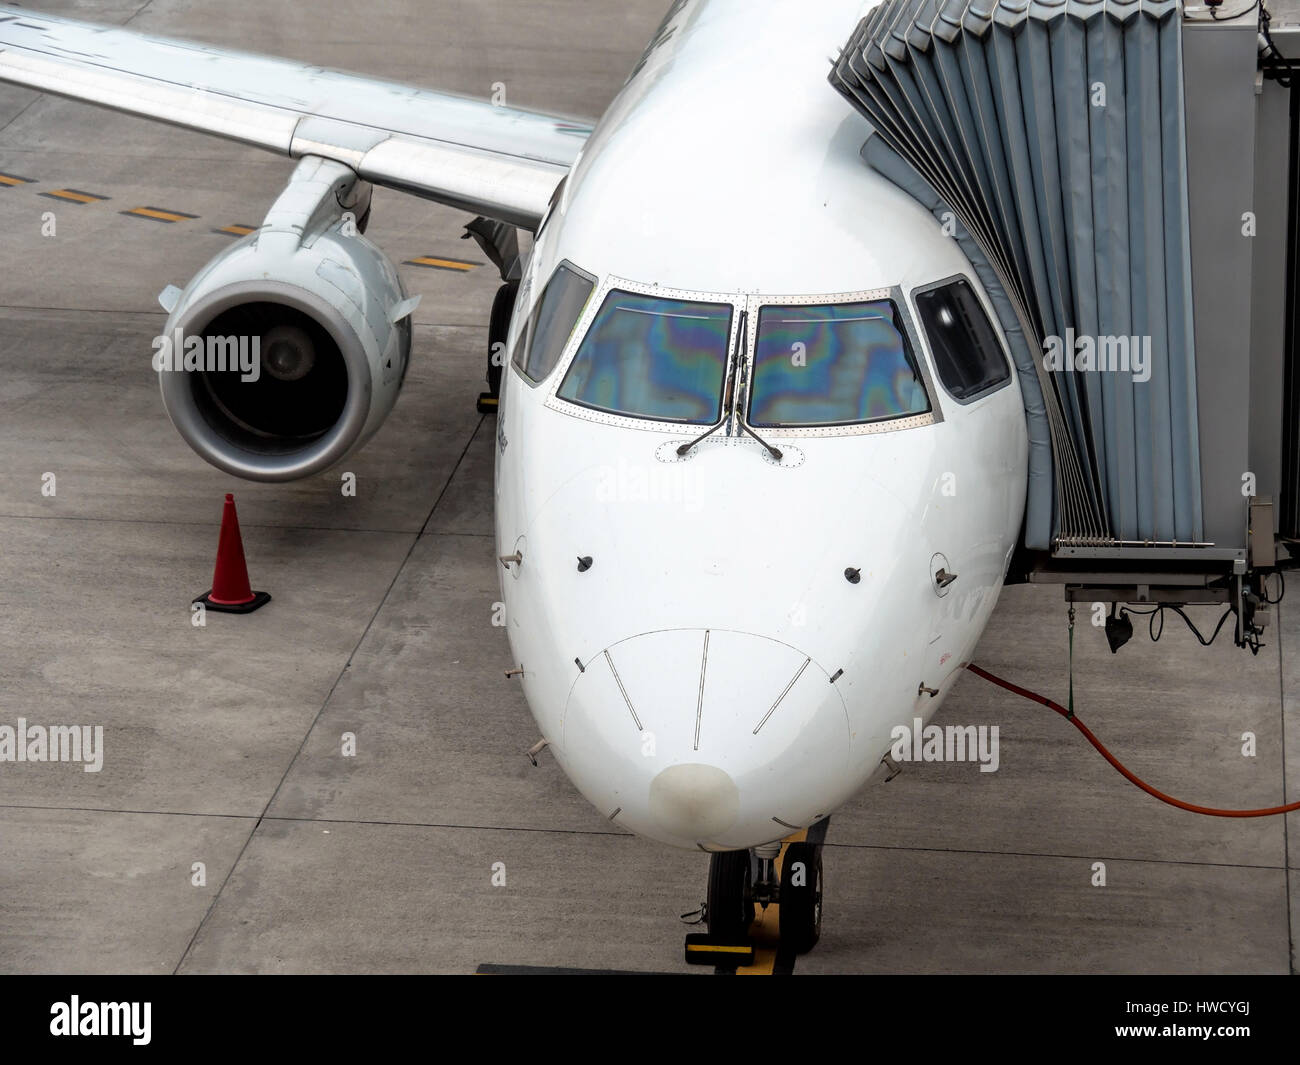 Un aereo è ancorato in un aeroporto, Ein Flugzeug ist un einem Flughafen angedockt Foto Stock